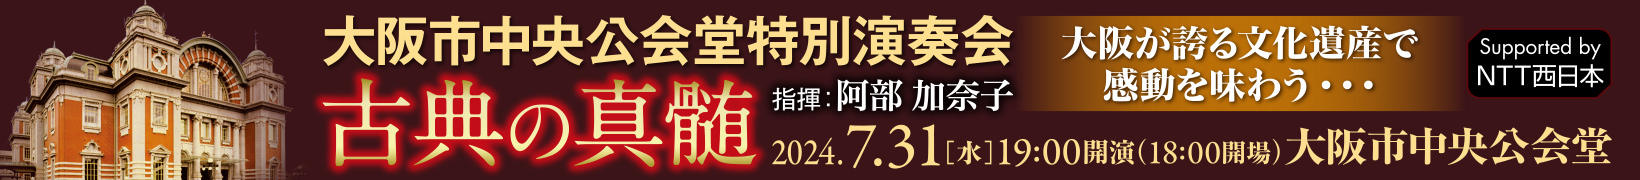 7月31日公演 大阪市中央公会堂特別演奏会 《古典の真髄》